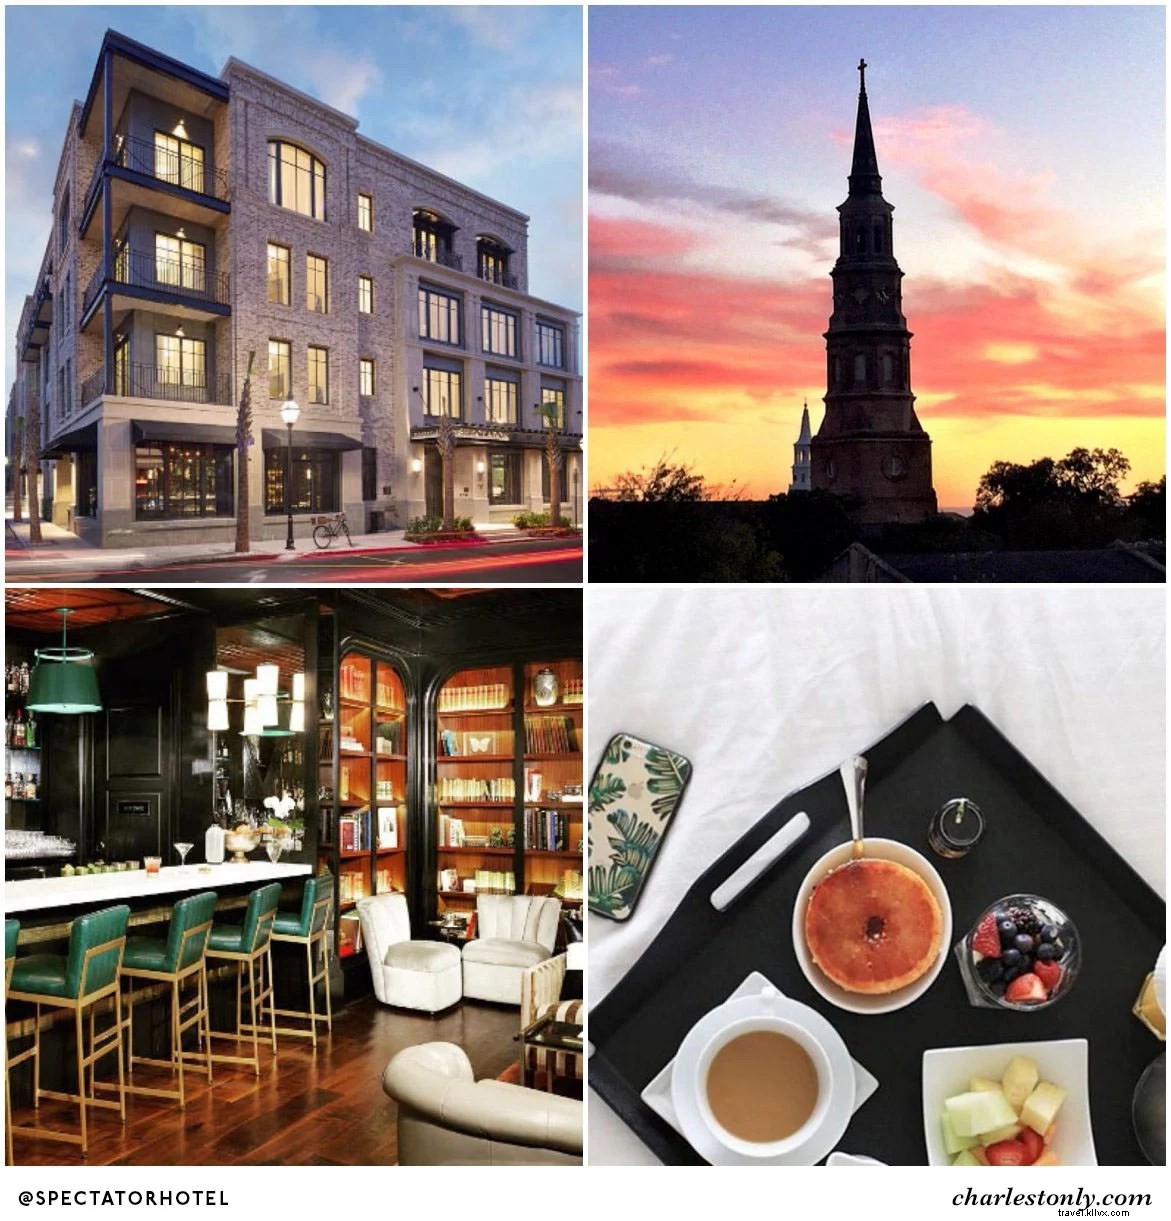 As 6 contas imperdíveis do Holy City Hotel no Instagram 